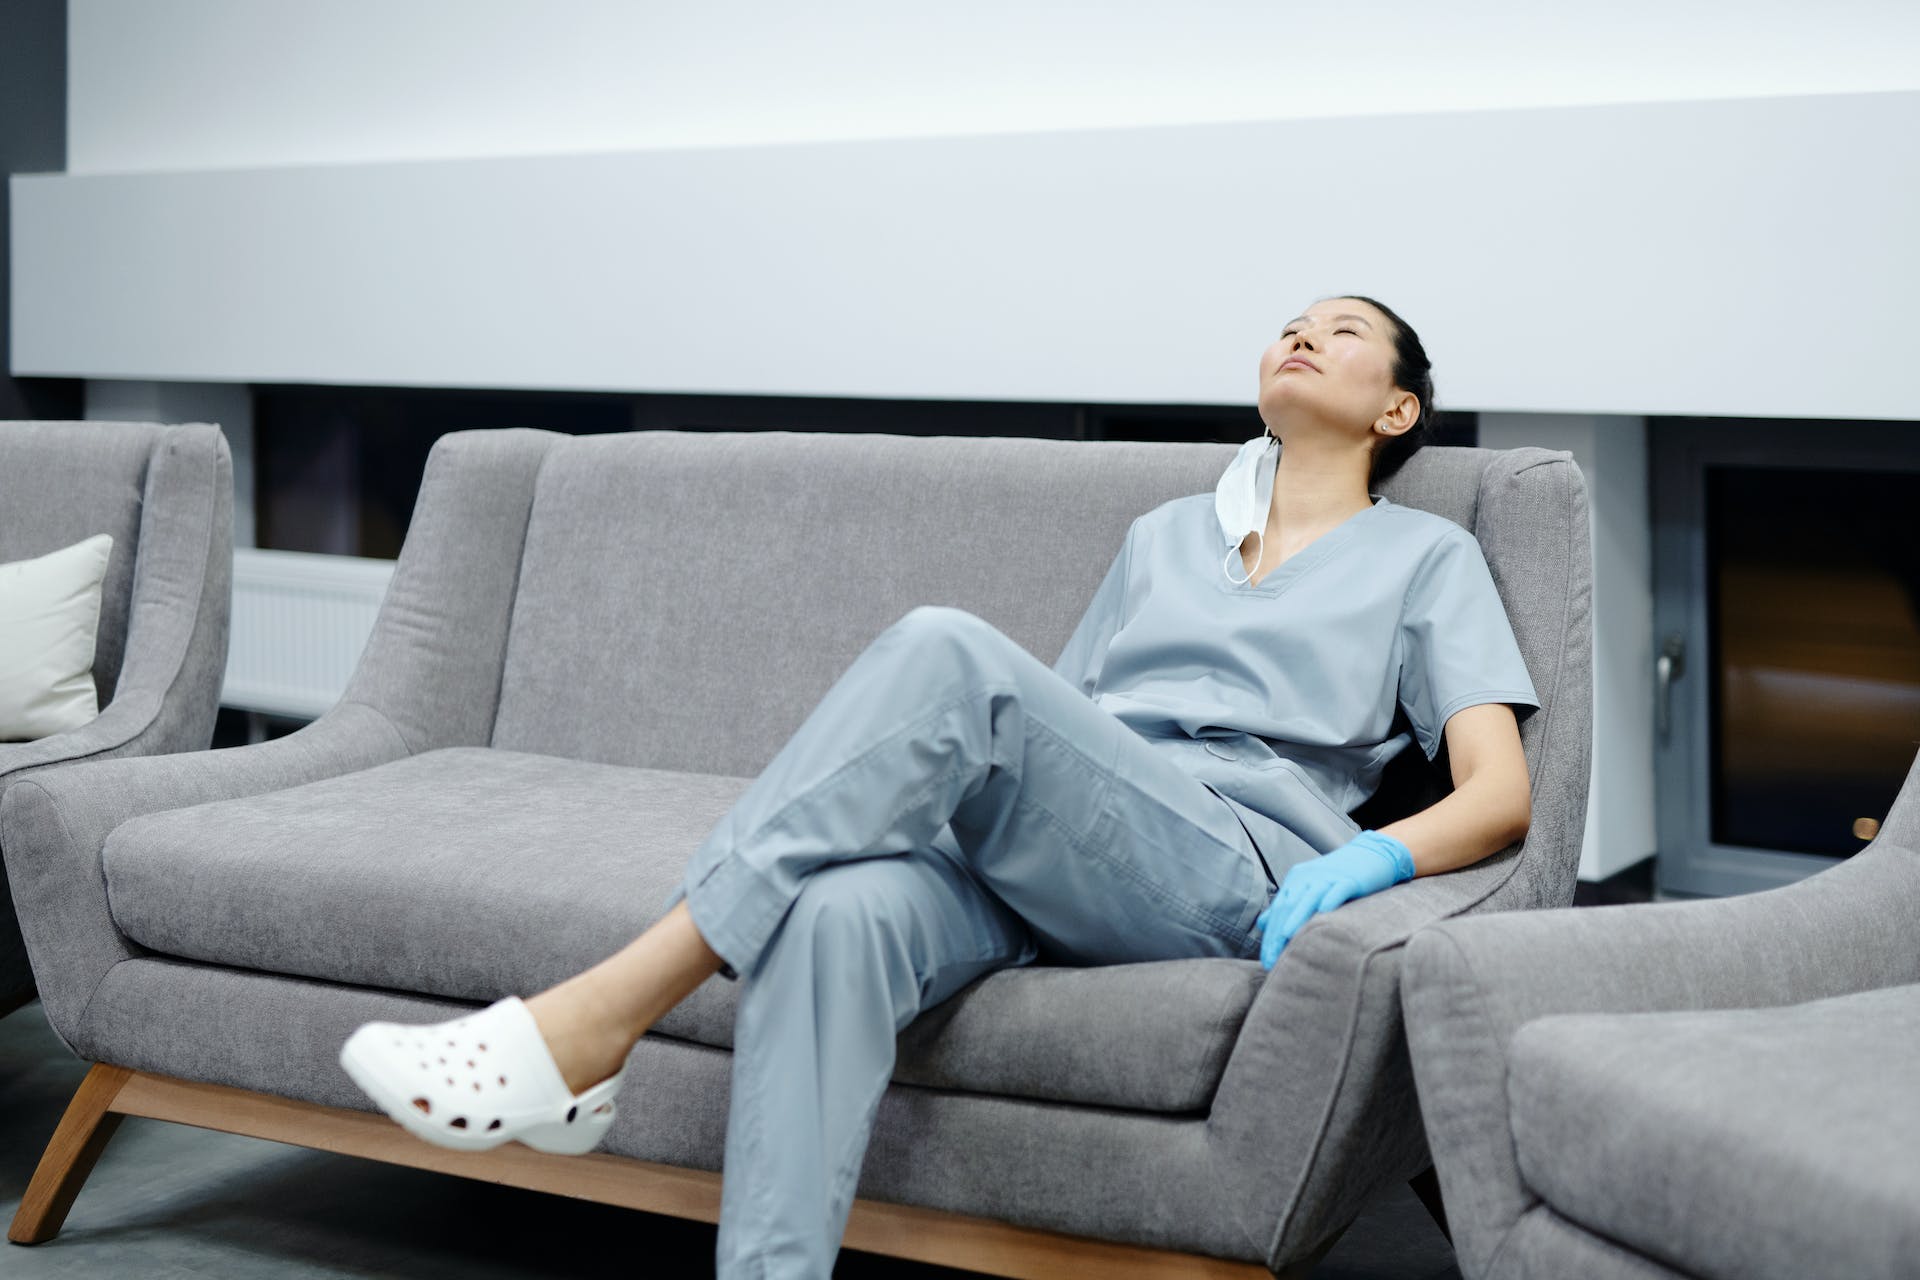 Krankenschwester ruht sich auf einer Couch aus | Quelle: Pexels